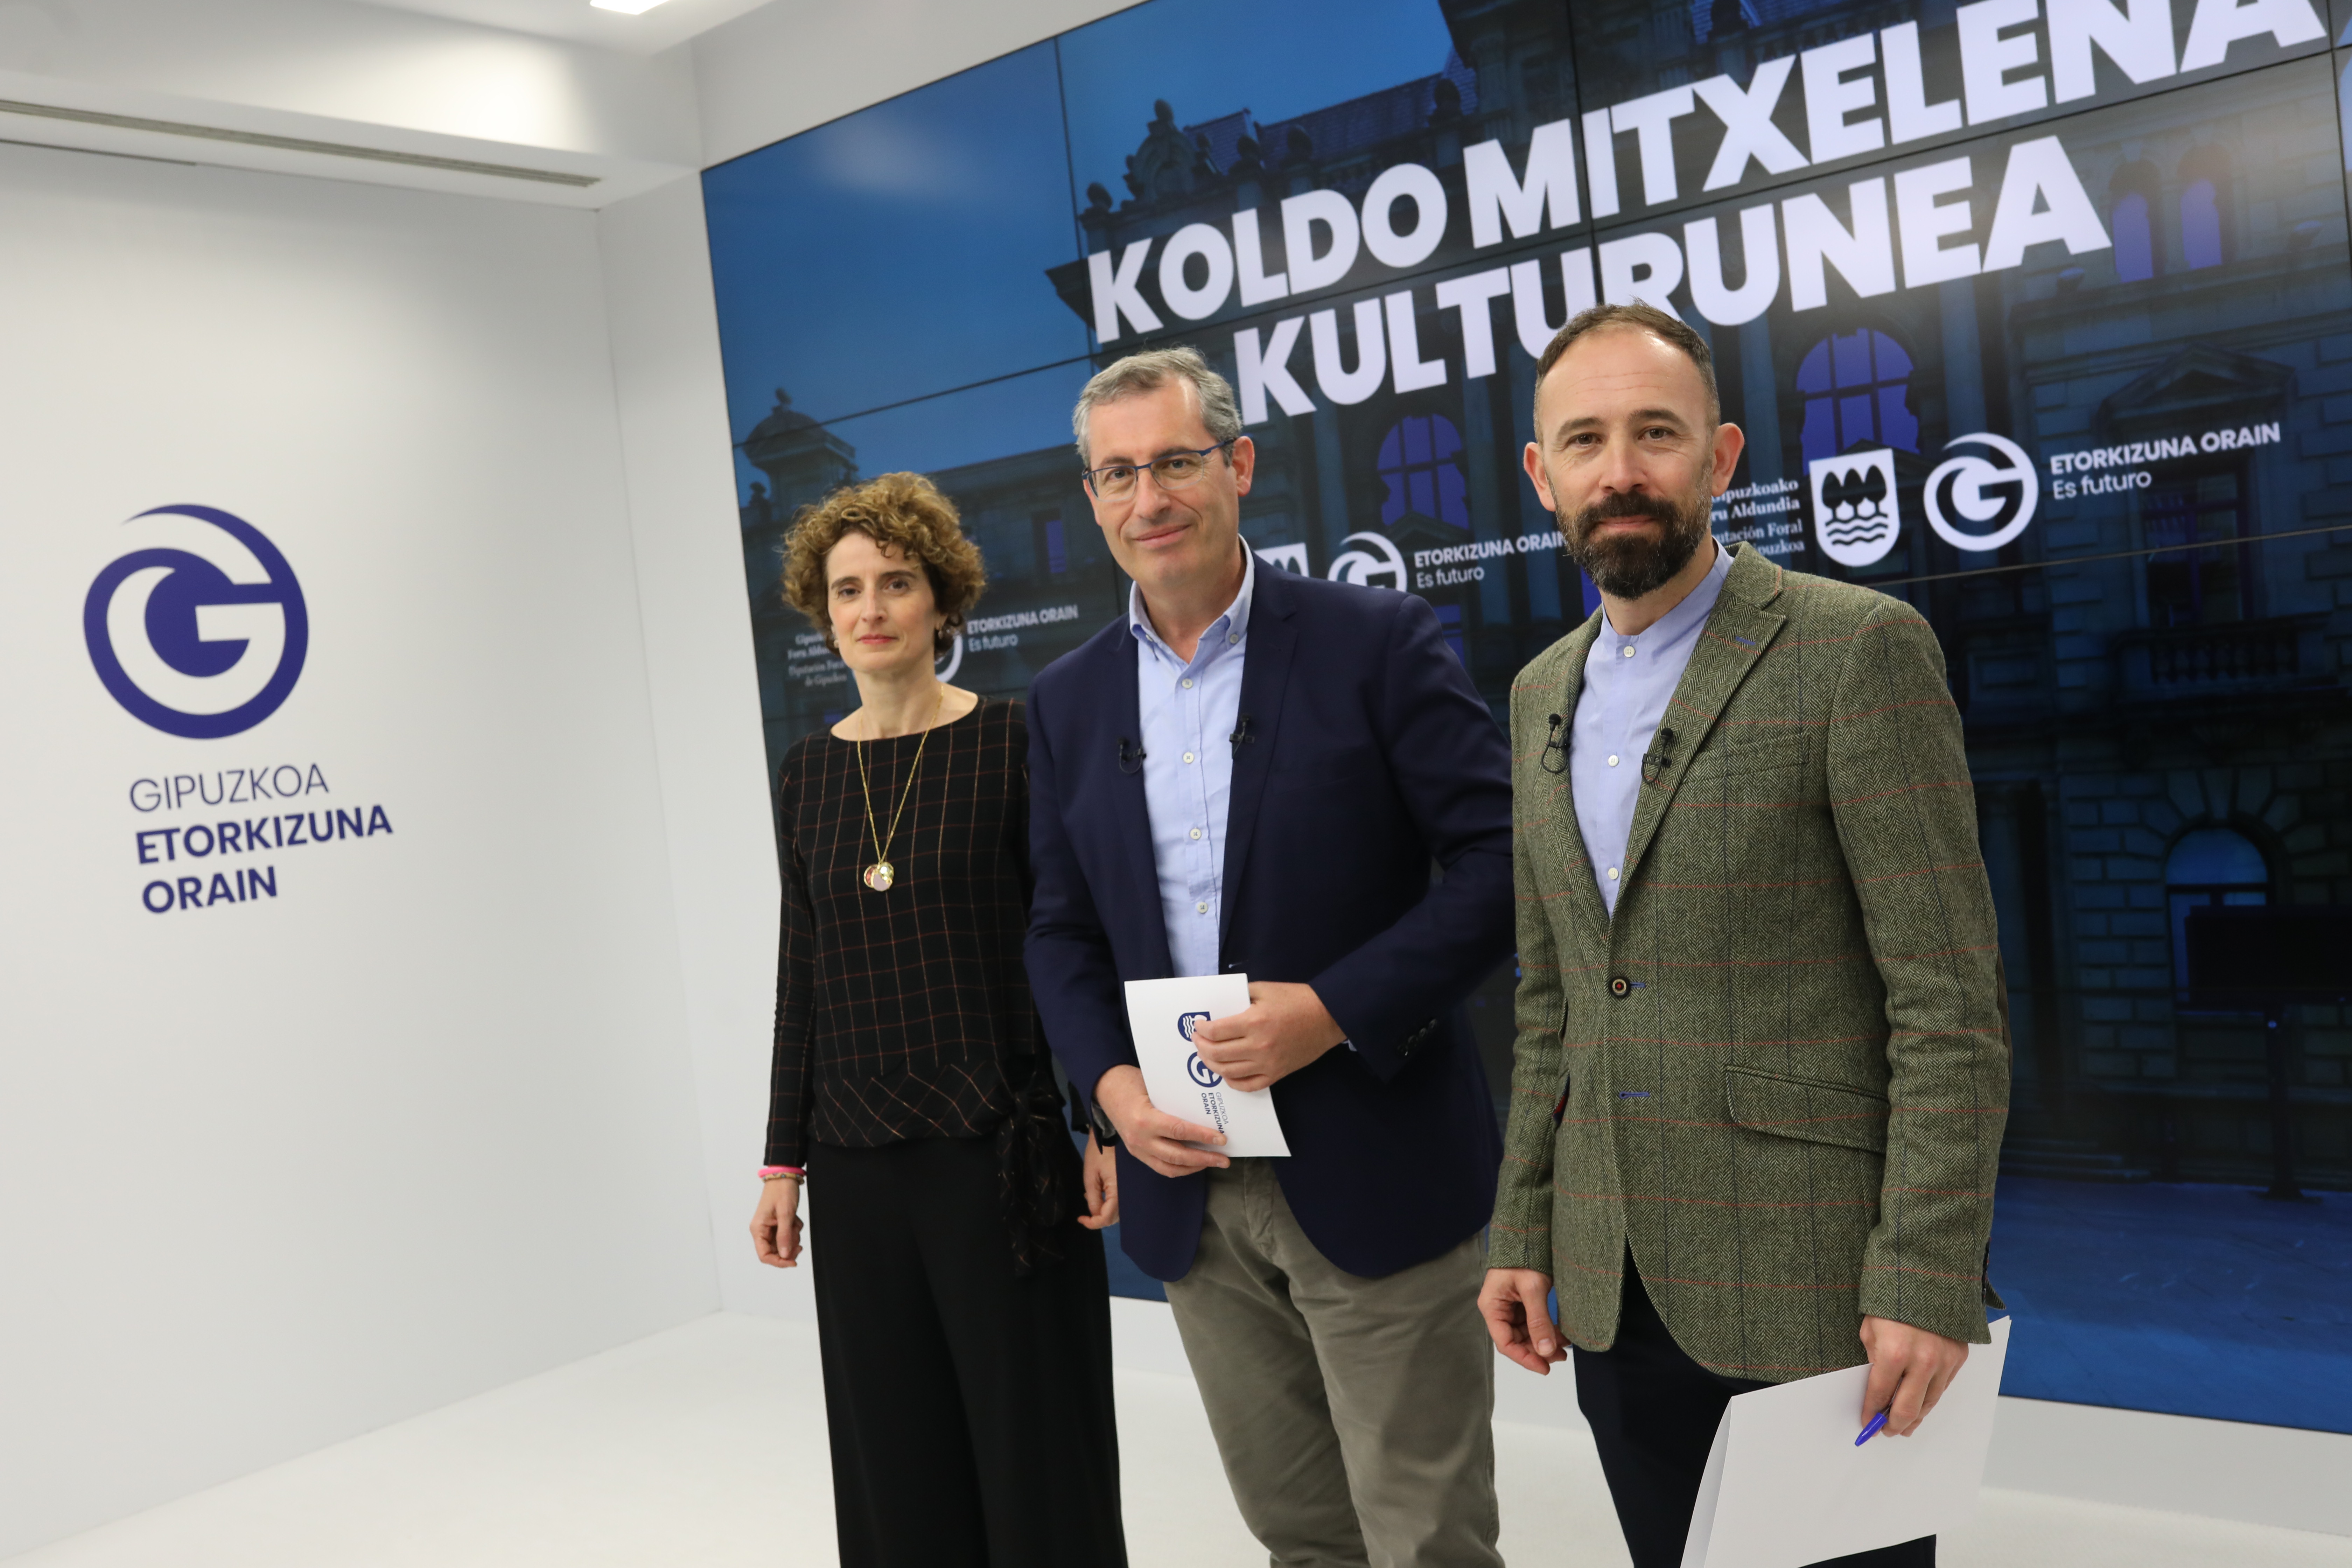 Diputación aprueba el proyecto de renovación del centro cultural Koldo Mitxelena y saca a concurso las obras por 9 millones de euros